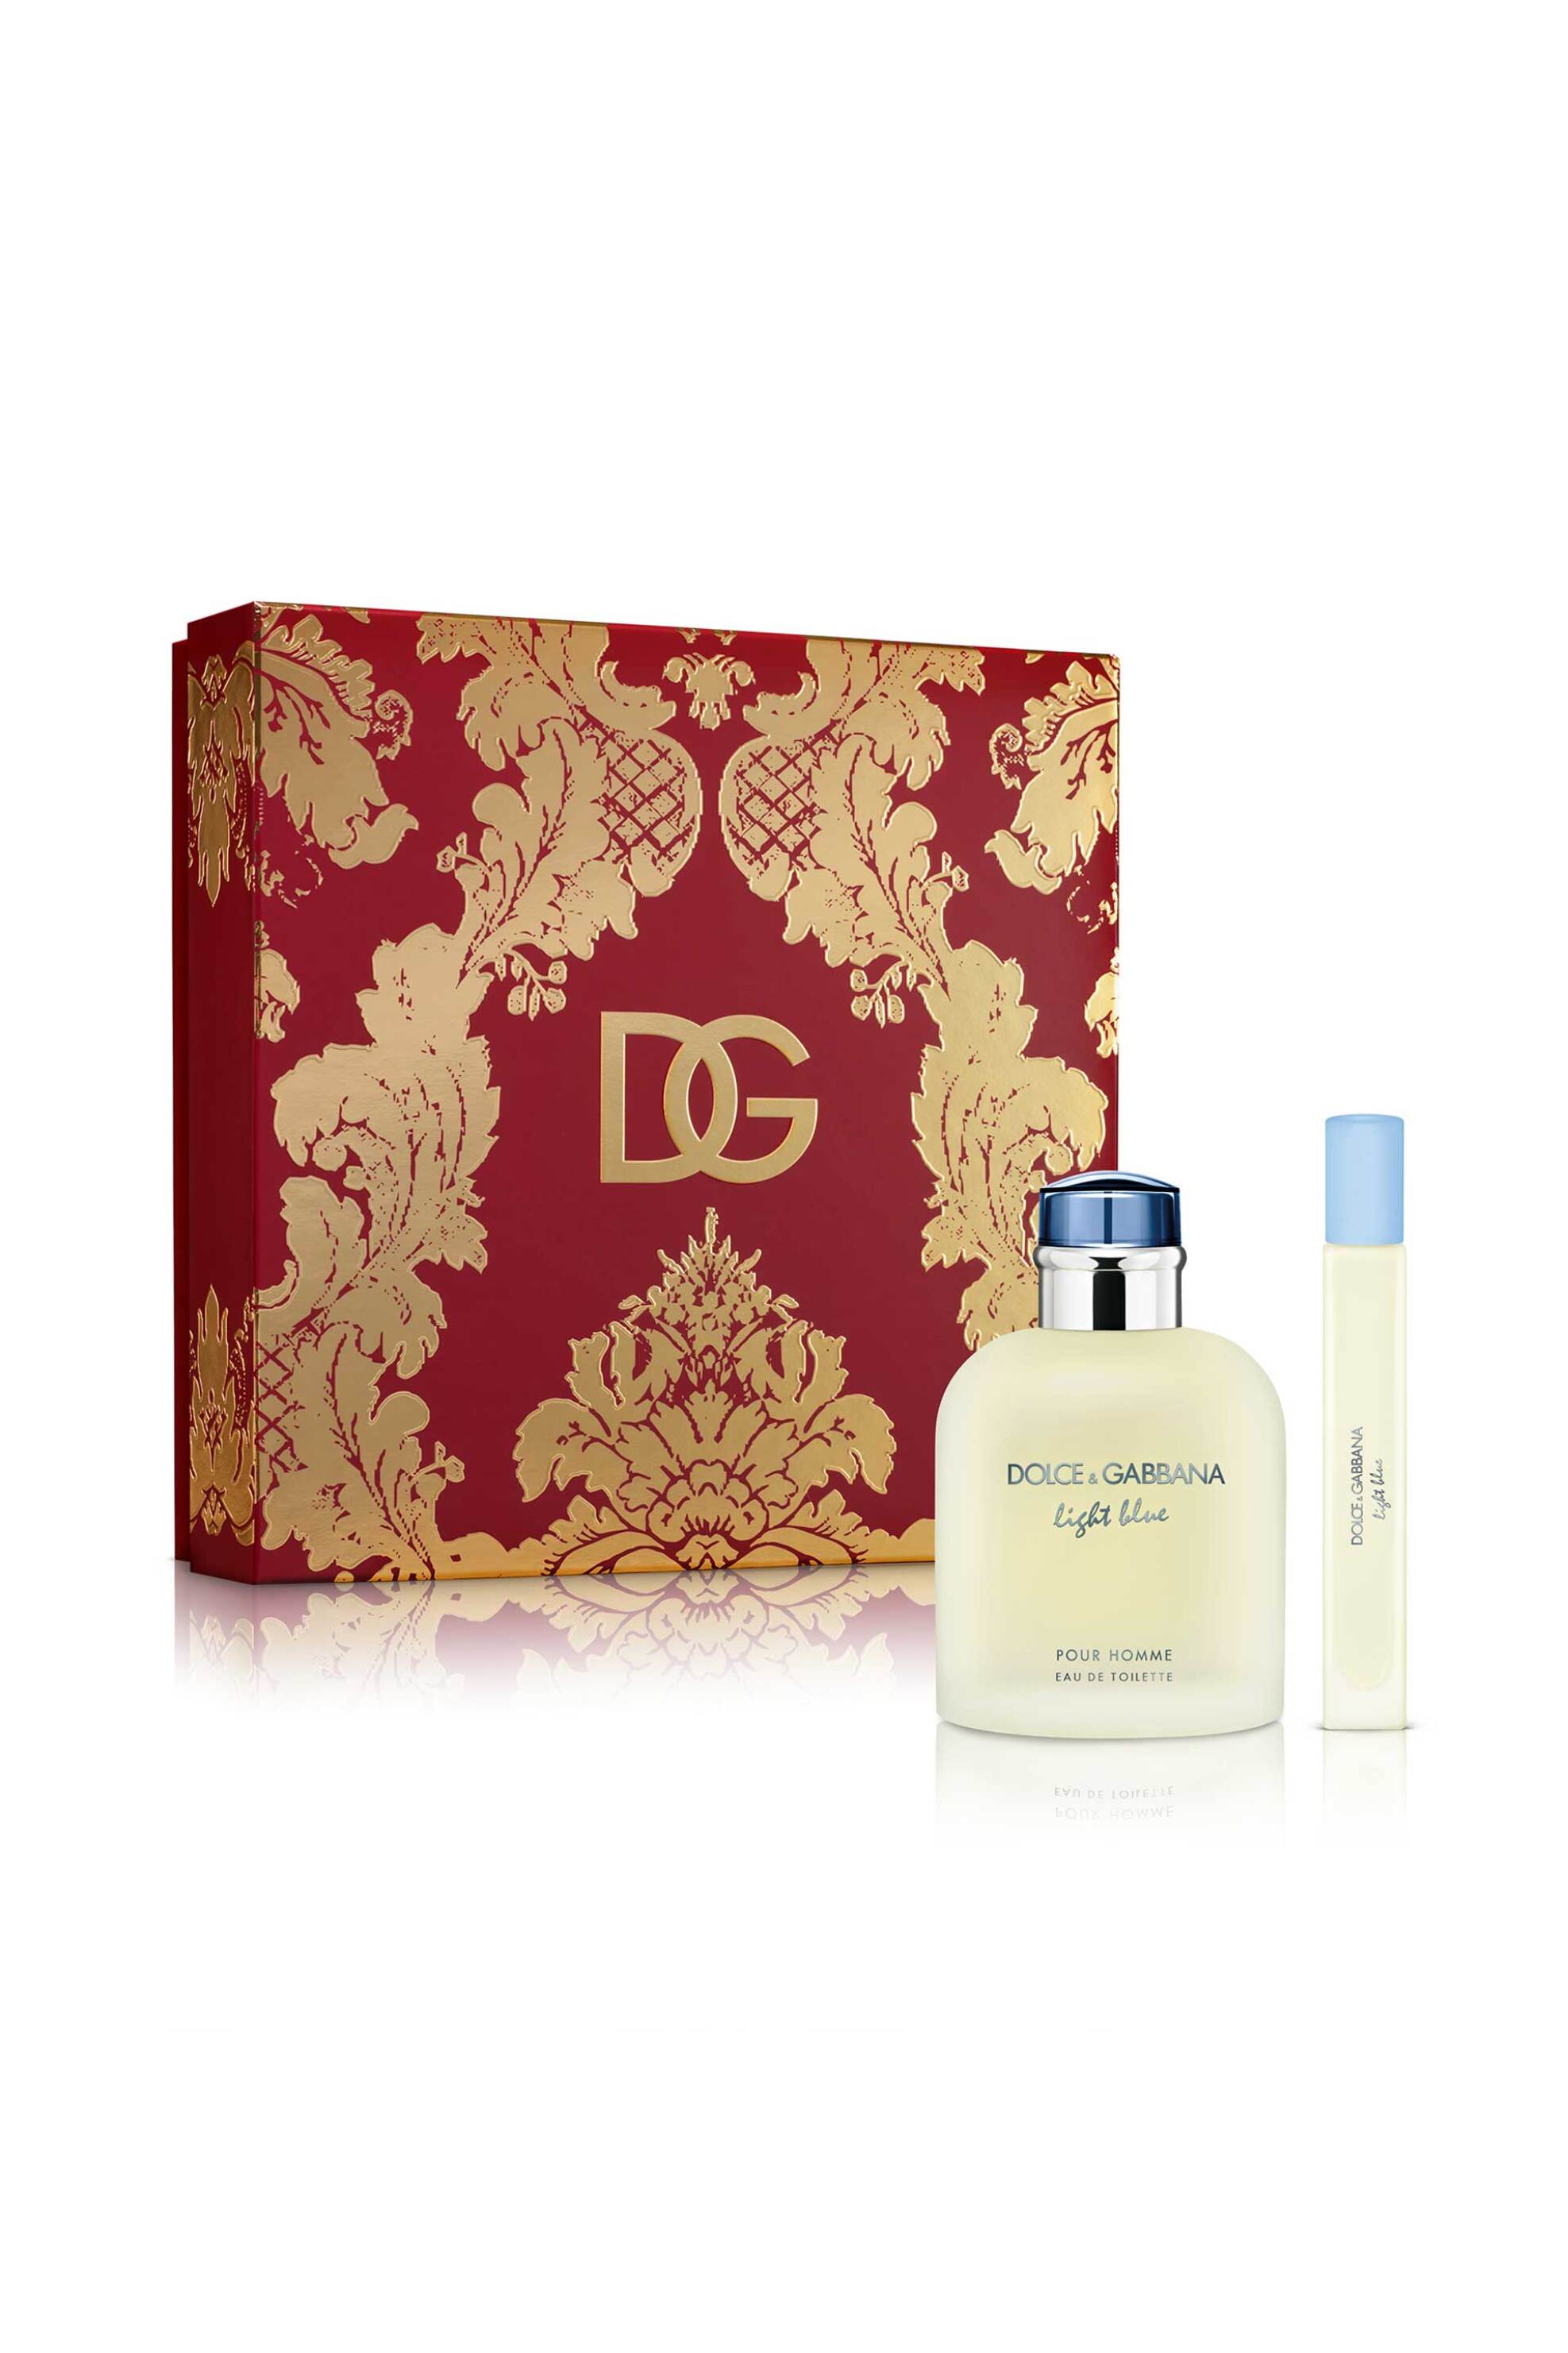 Προϊόντα Ομορφιάς > ΑΡΩΜΑΤΑ > Ανδρικά Αρώματα > Σετ Αρωμάτων Dolce&Gabbana Light Blue Pour Homme Eau de Toilette Gift Set - P1LB2D02